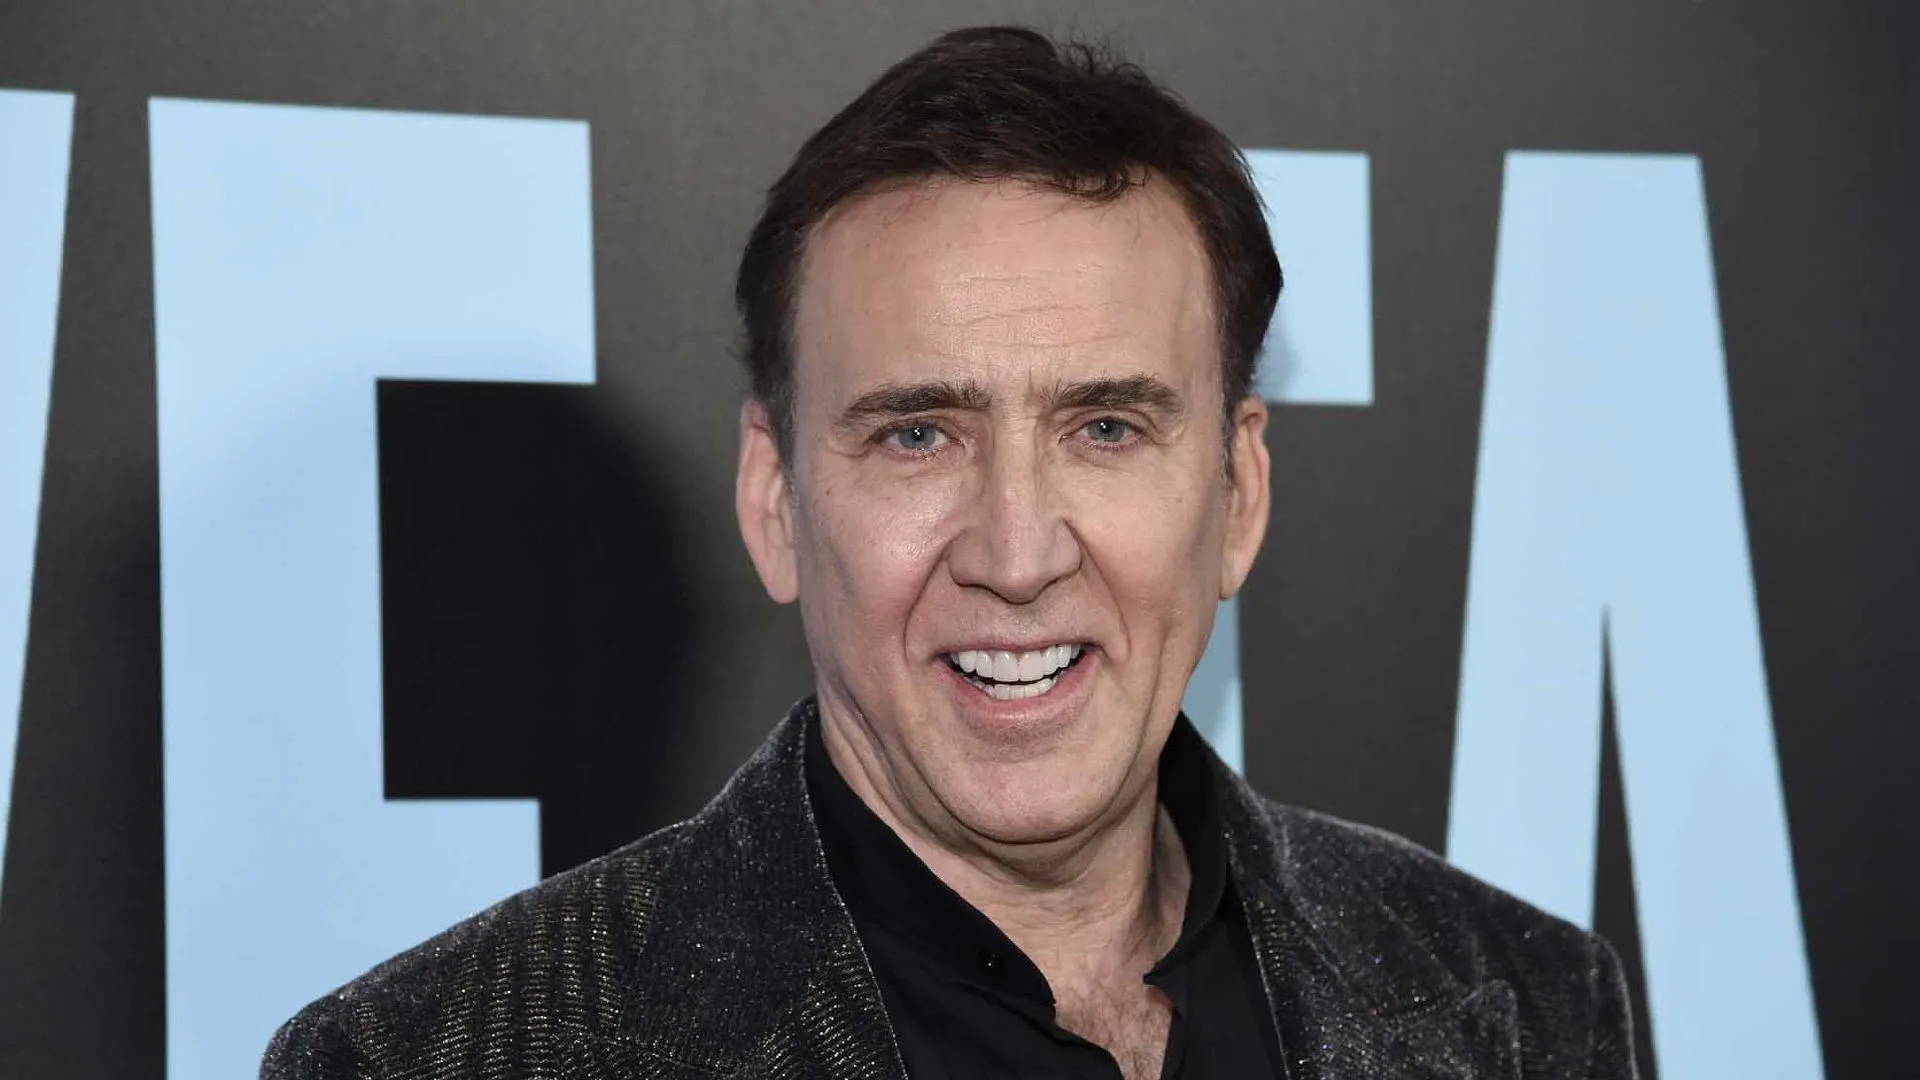 Nicolas Cage to star in A24 comedy 'Dream Scenario', written and directed by Kristoffer Borgli | FMV6